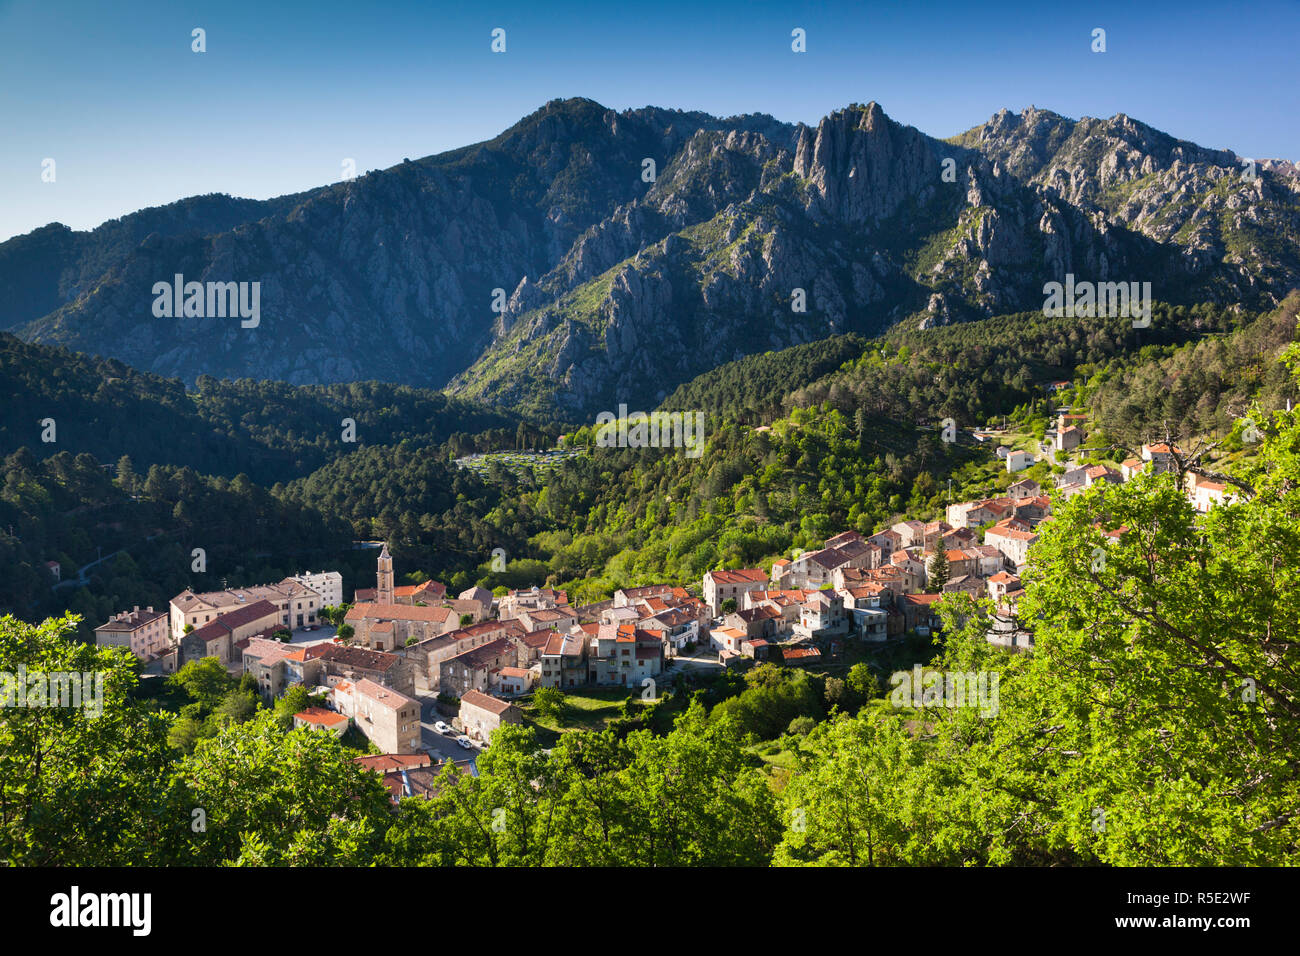 France, Corse, Haute-Corse département, région des montagnes centrales, Ghisoni, augmentation de la vue sur la ville Banque D'Images